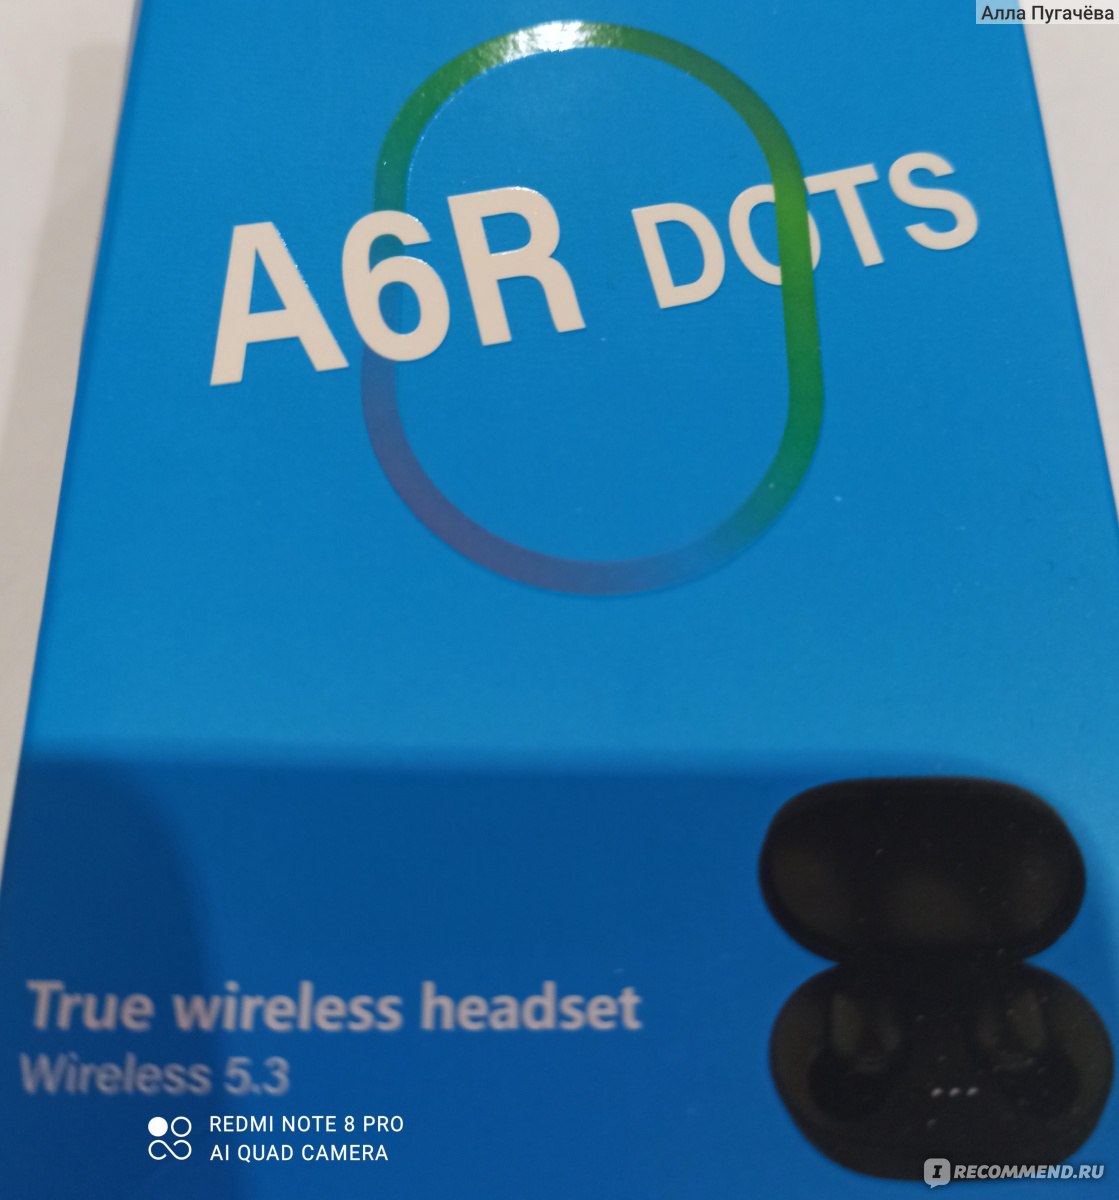 Беспроводные наушники TWS A6R Dots фото